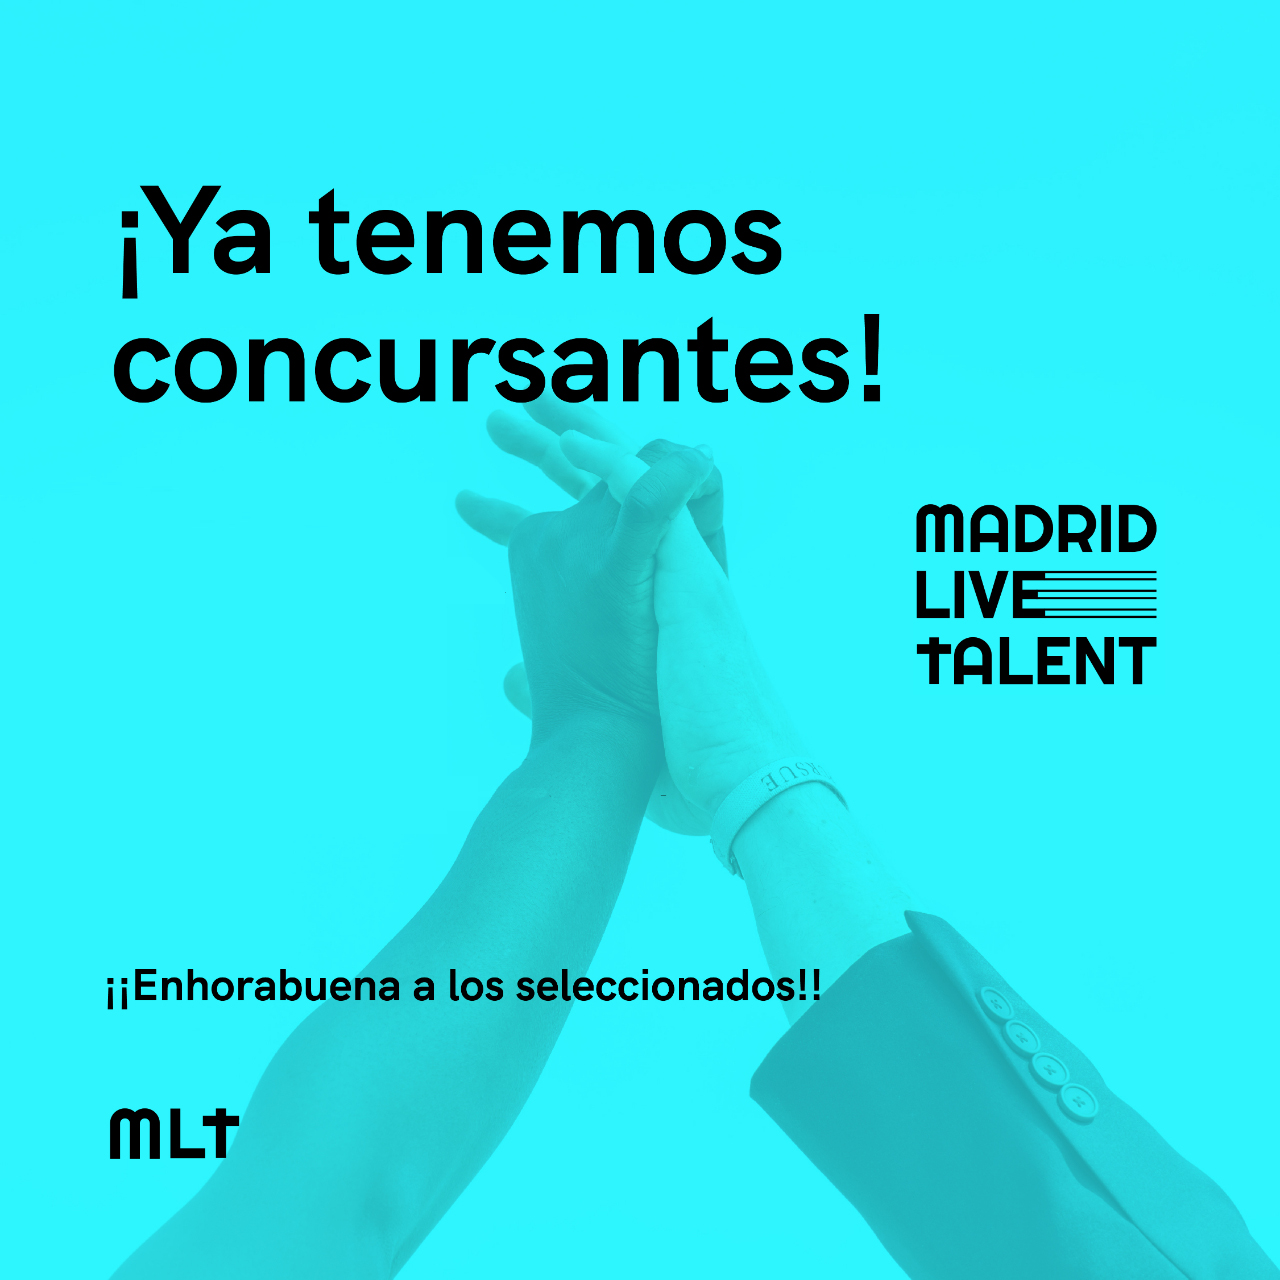 Madrid live talent